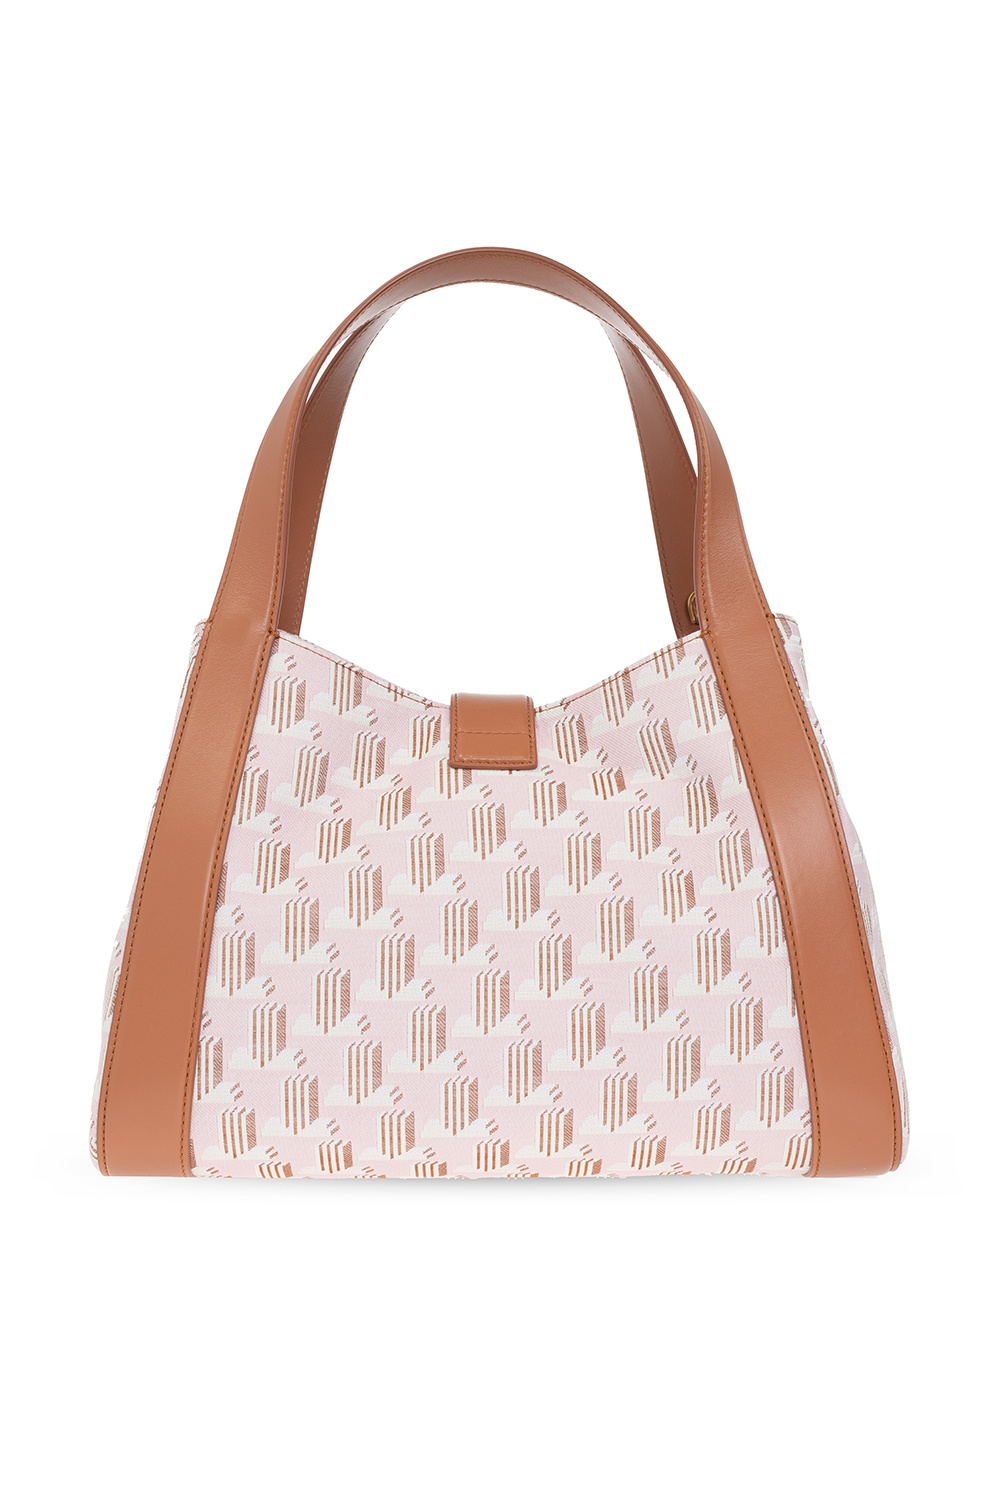 Lanvin ‘Daybag Medium’ shoulder bag